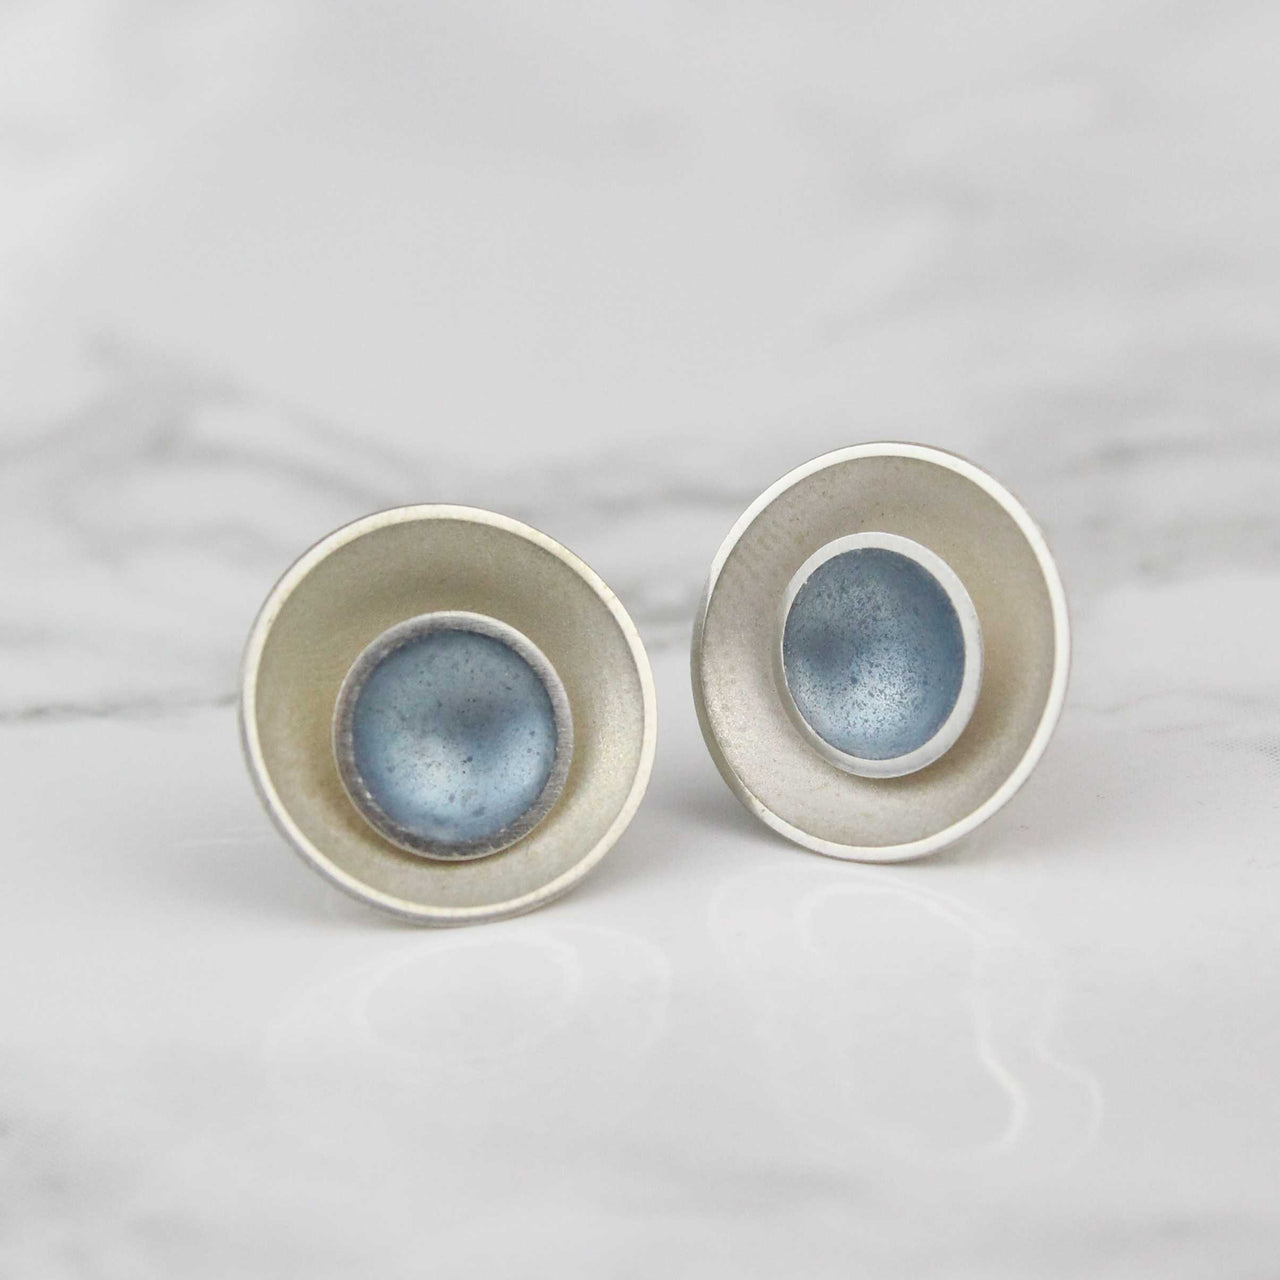 Silver & Enamel 2-in-1 Stud Earrings - Ice